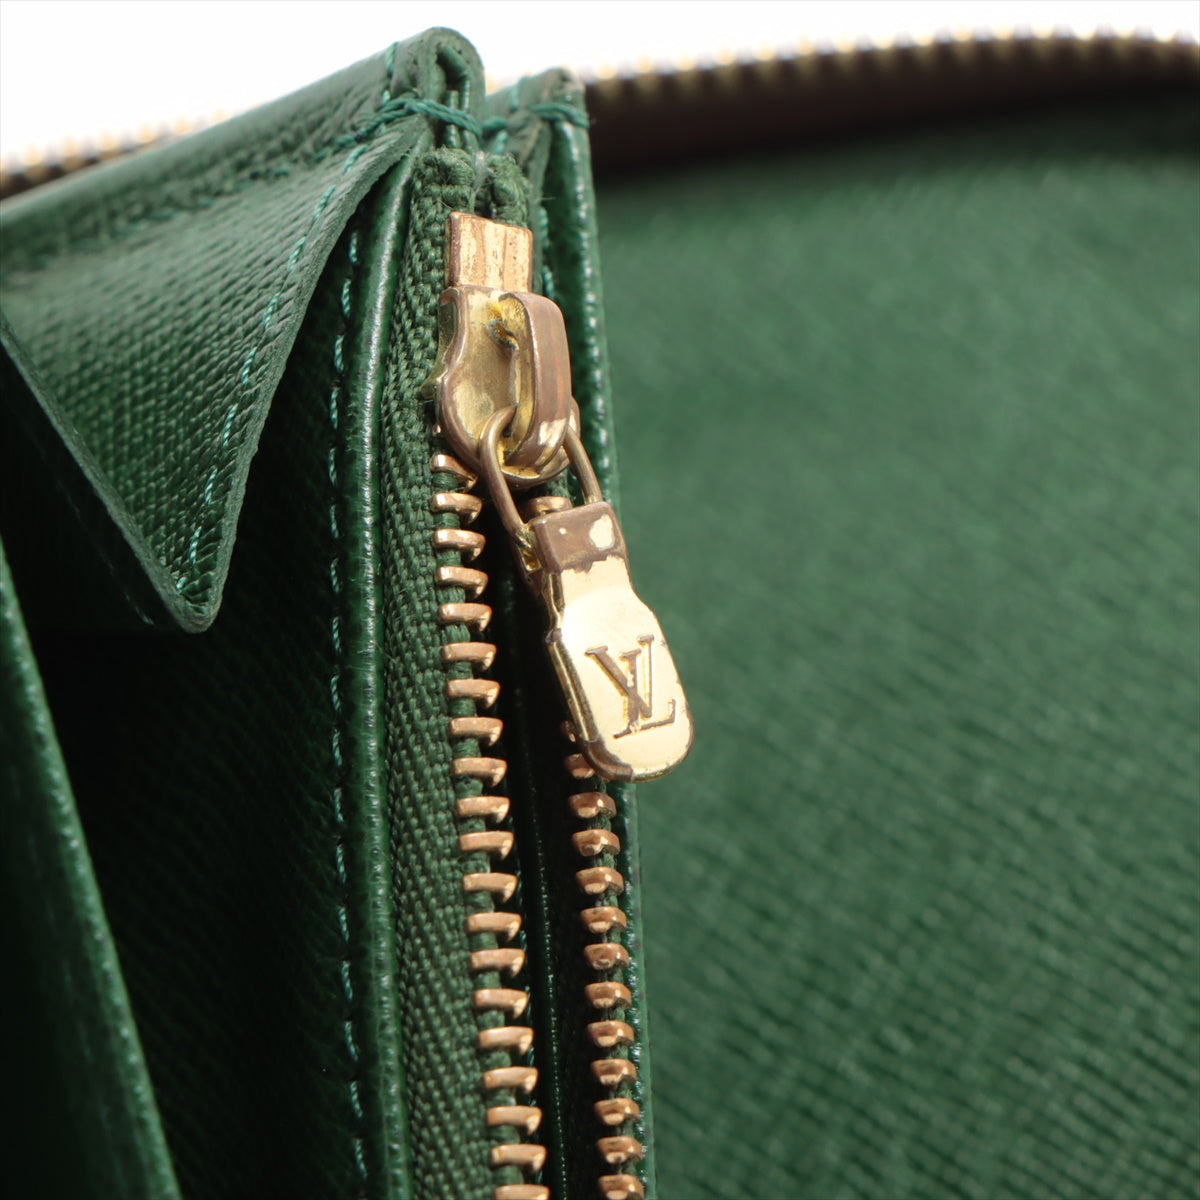 Louis Vuitton Zippy Organiser in Green